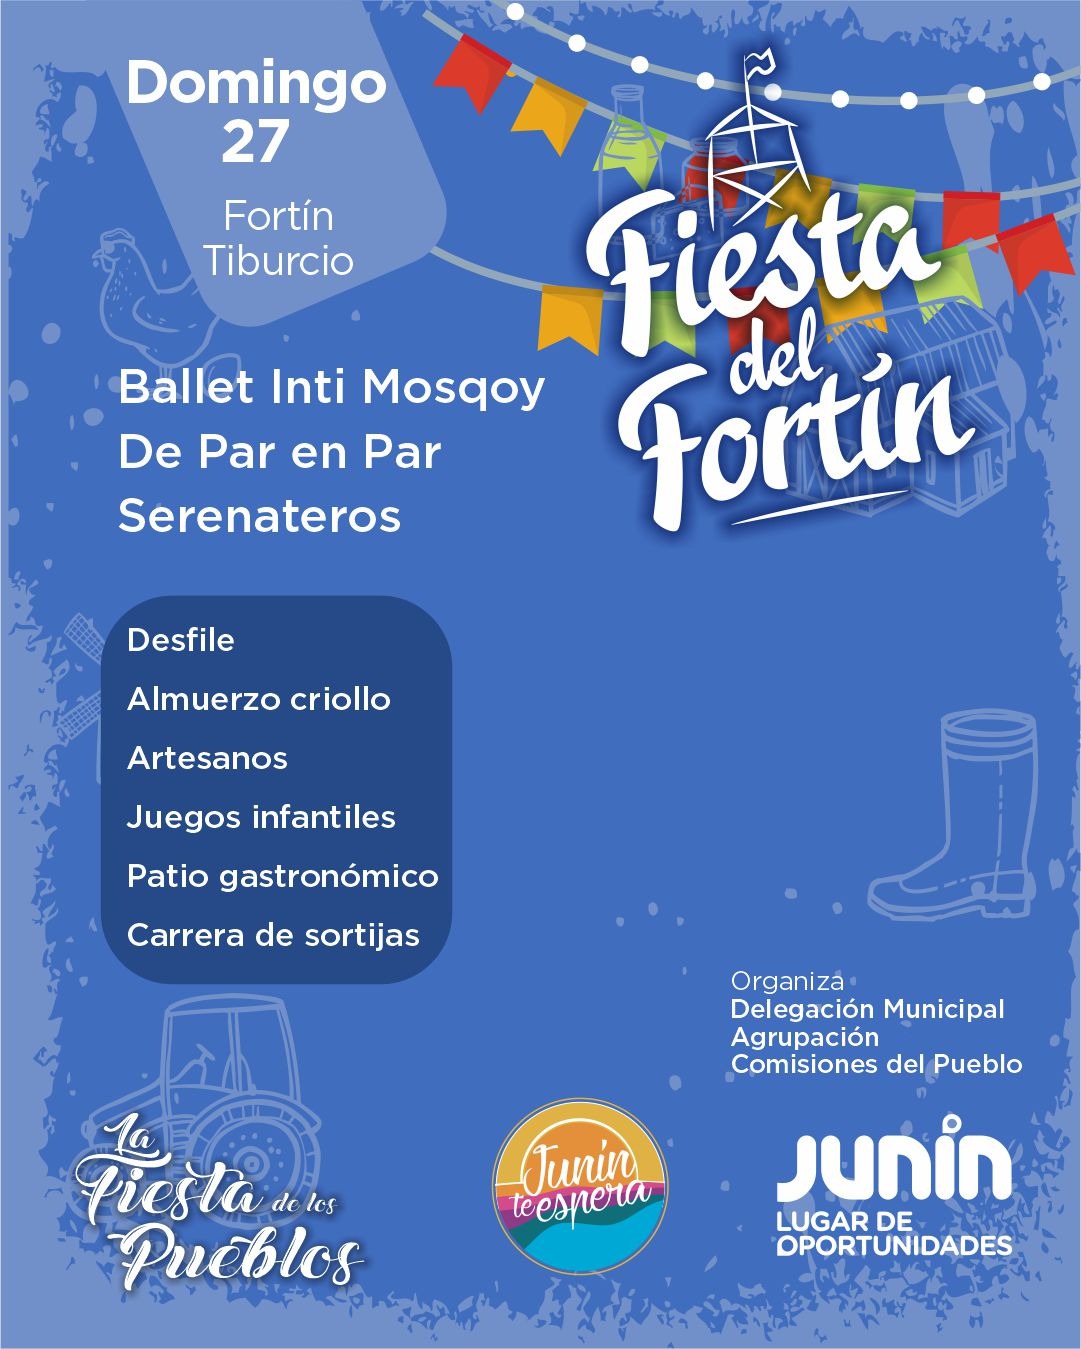 Tiburcio celebra una nueva “Fiesta del Fortín” este 26 y 27 de agosto